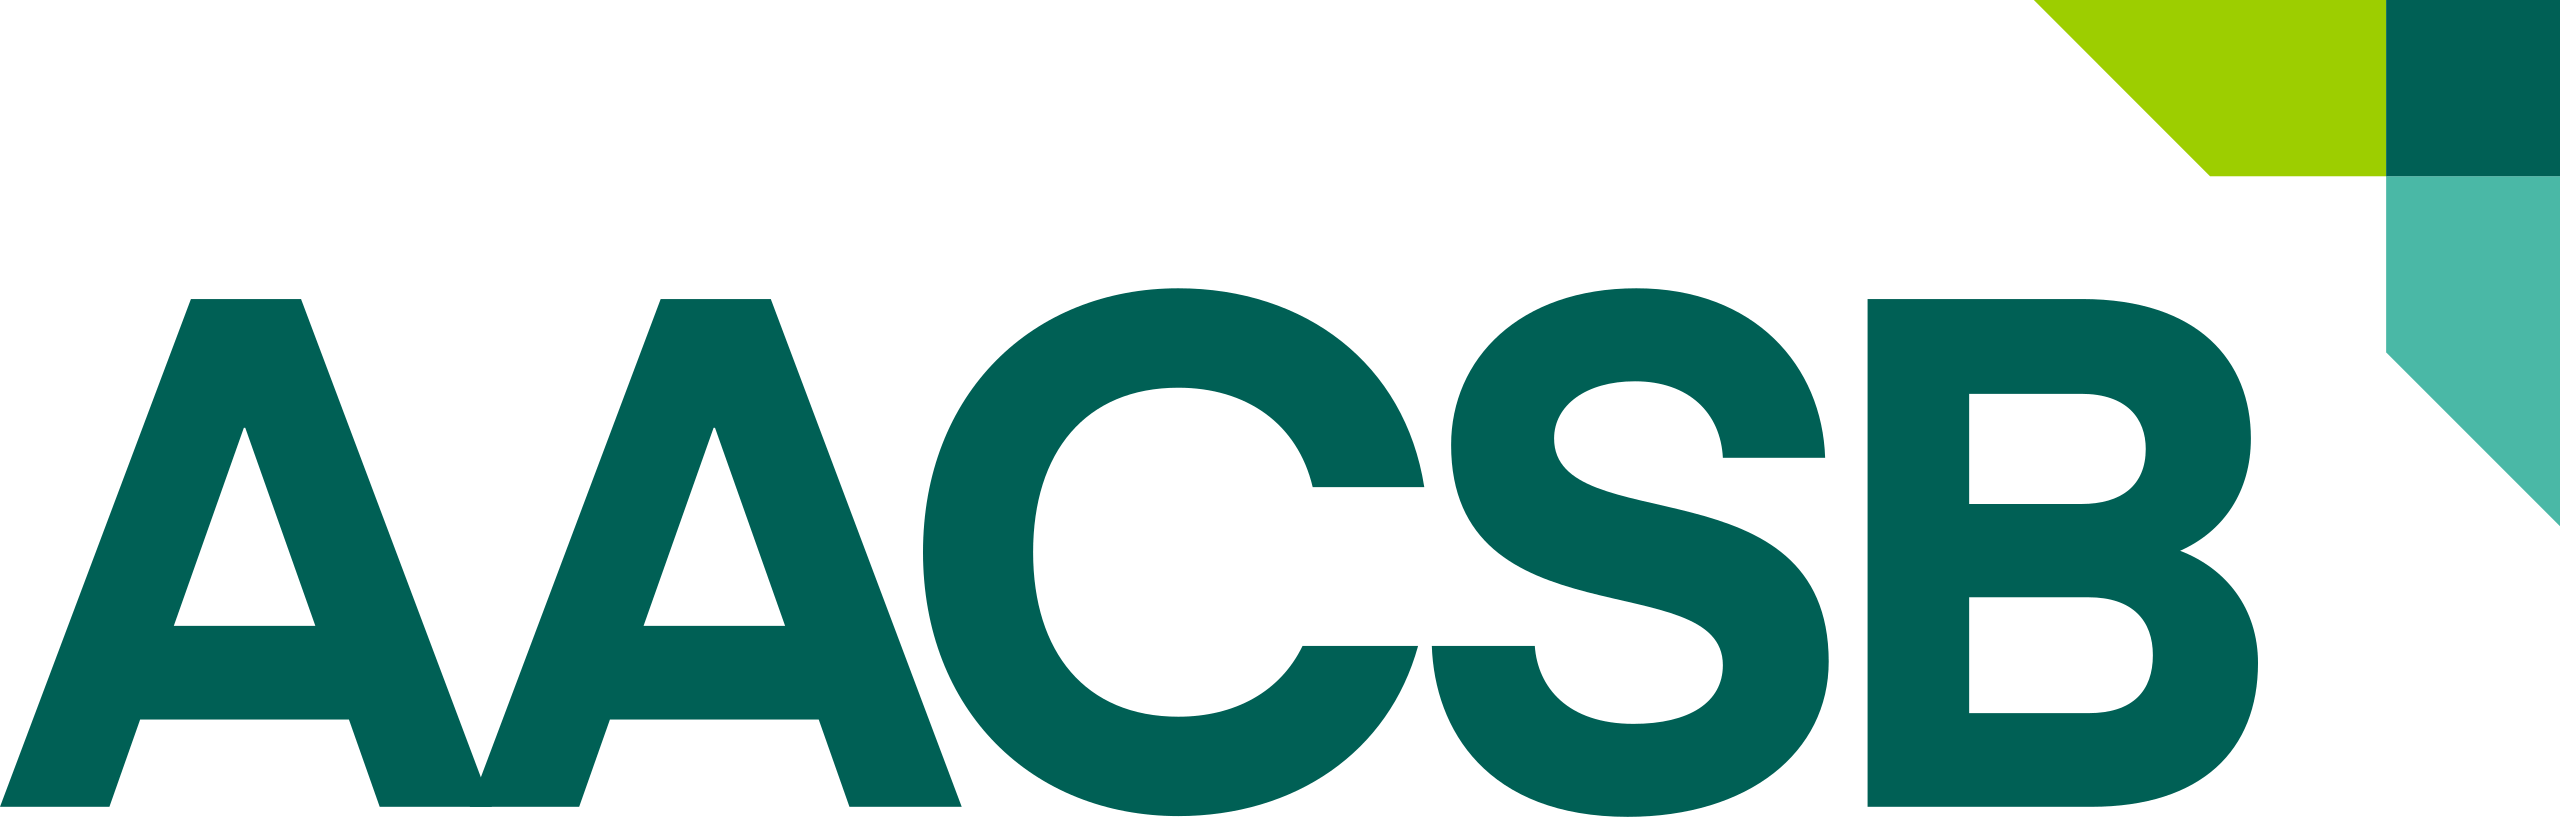 AACSB Logo 2022